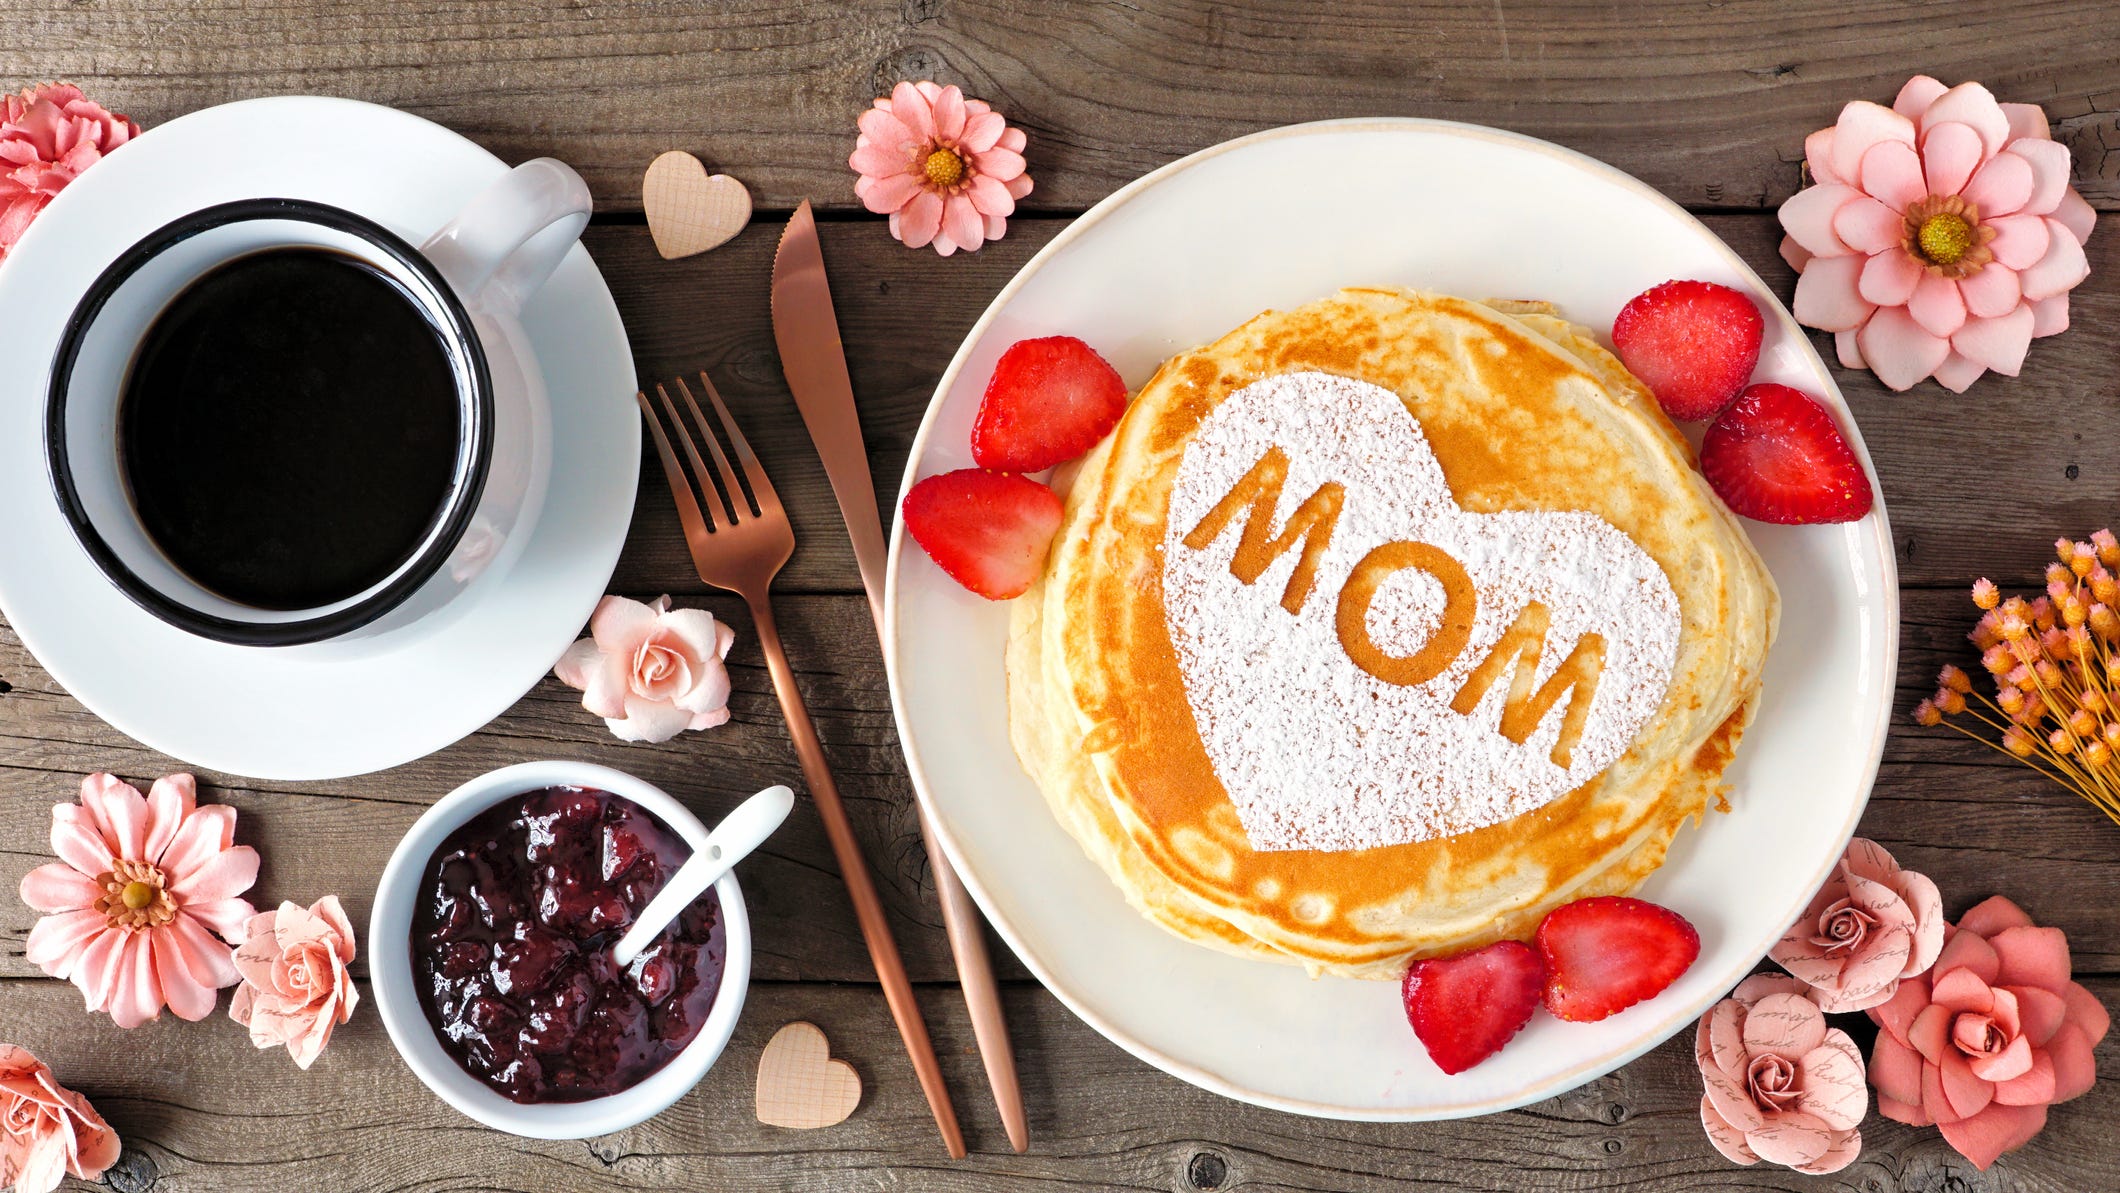 Mother's Day restaurant specials, activities around Montgomery